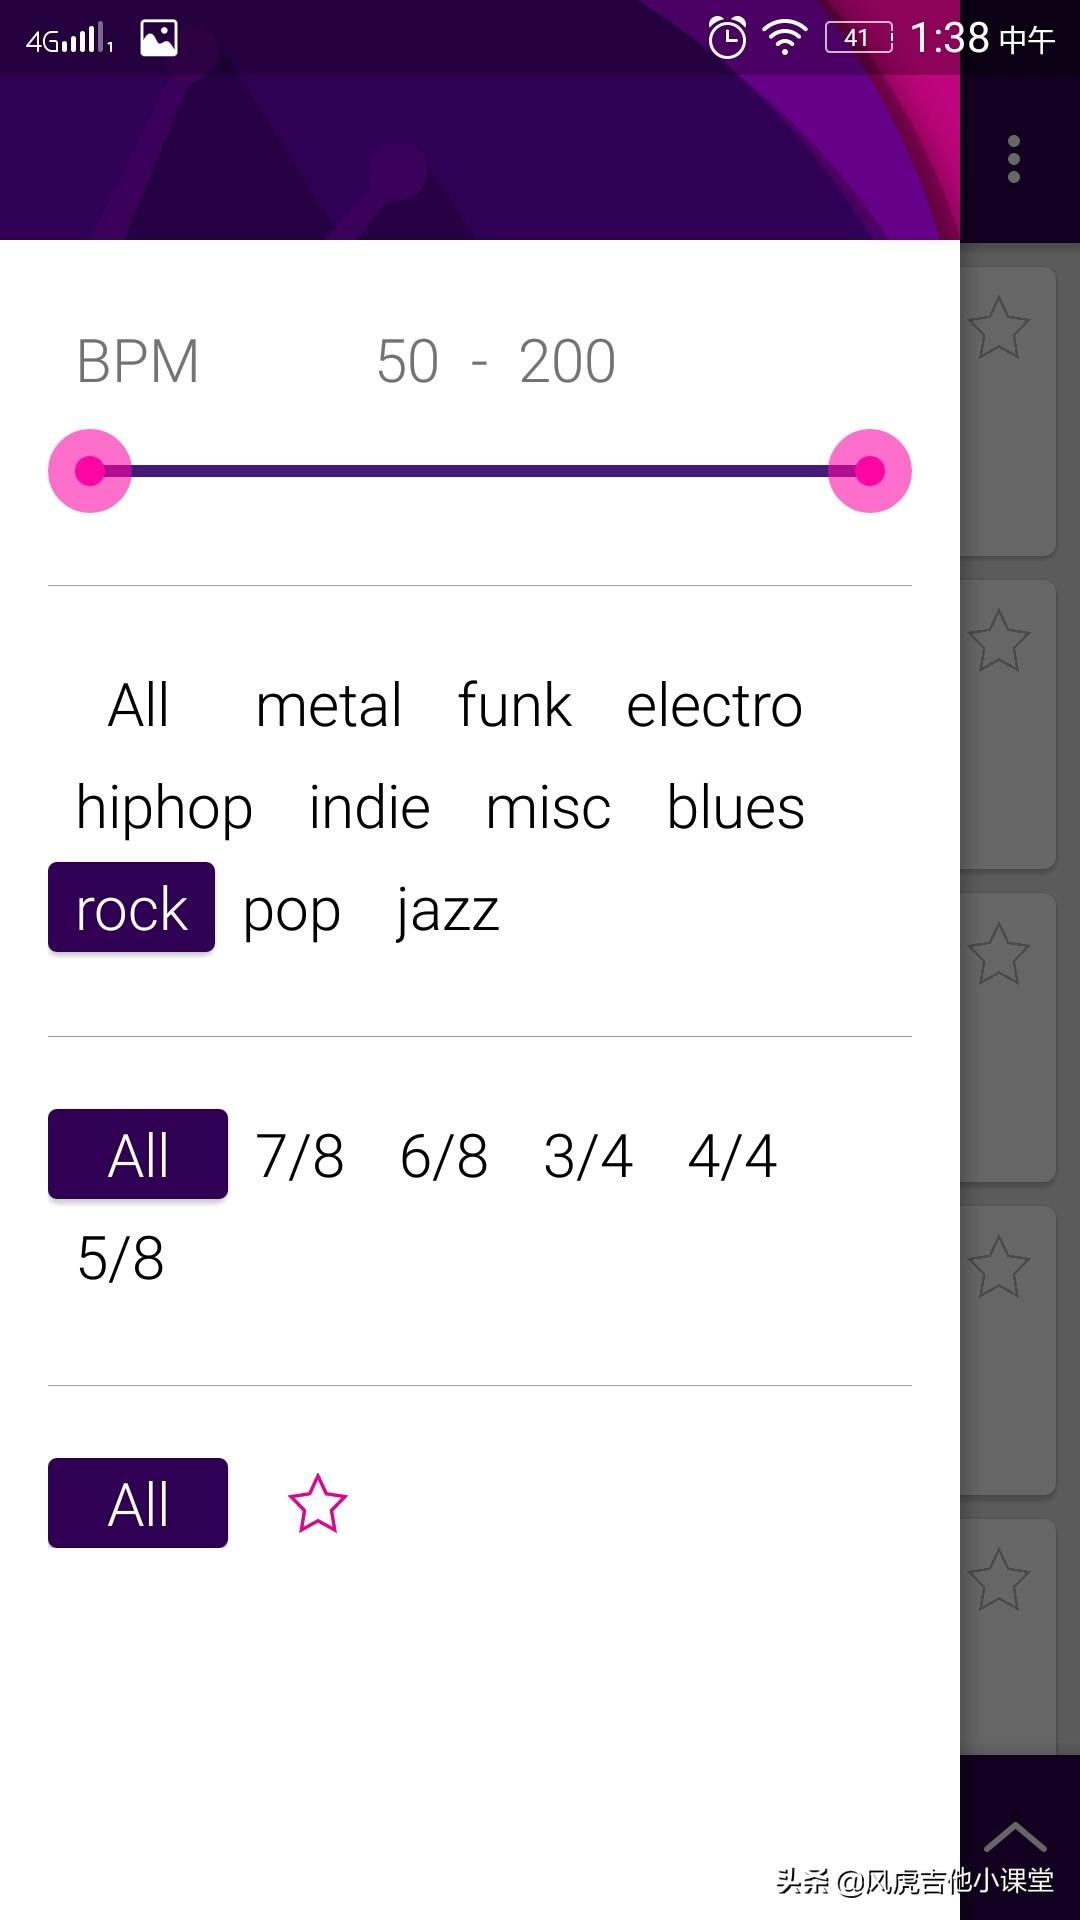 一款非常出色的鼓Loop软件，Loopz今天给各位琴友介绍一款鼓Loop的安卓软件Loopz，这一款鼓loop软件非常棒，里面的风格几乎应有尽有，从metal，funk，electro，hiphop，indie，misc，blues，rock，